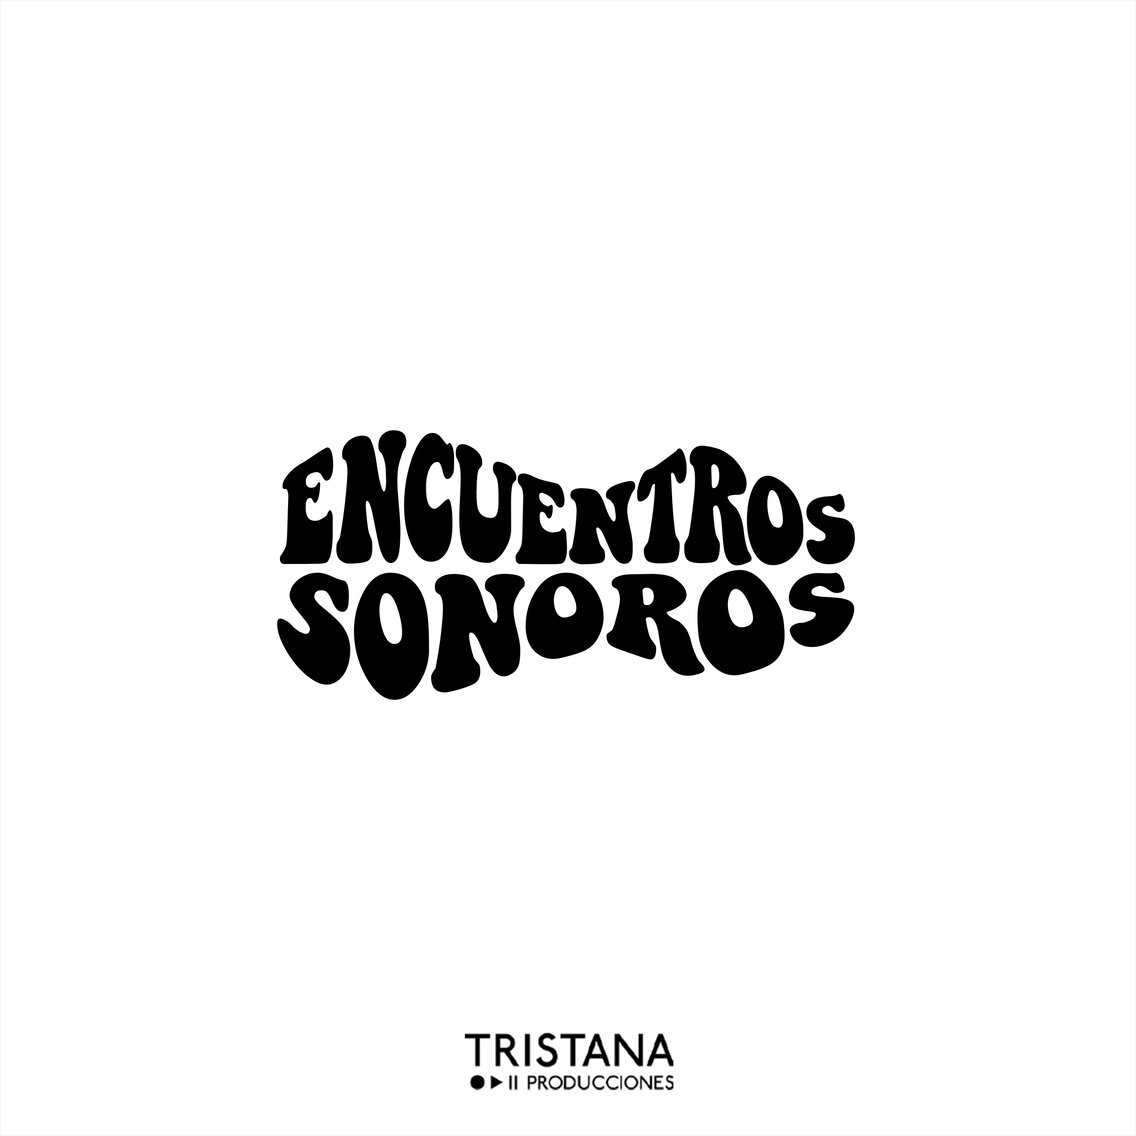 Encuentros sonoros - Cover Image